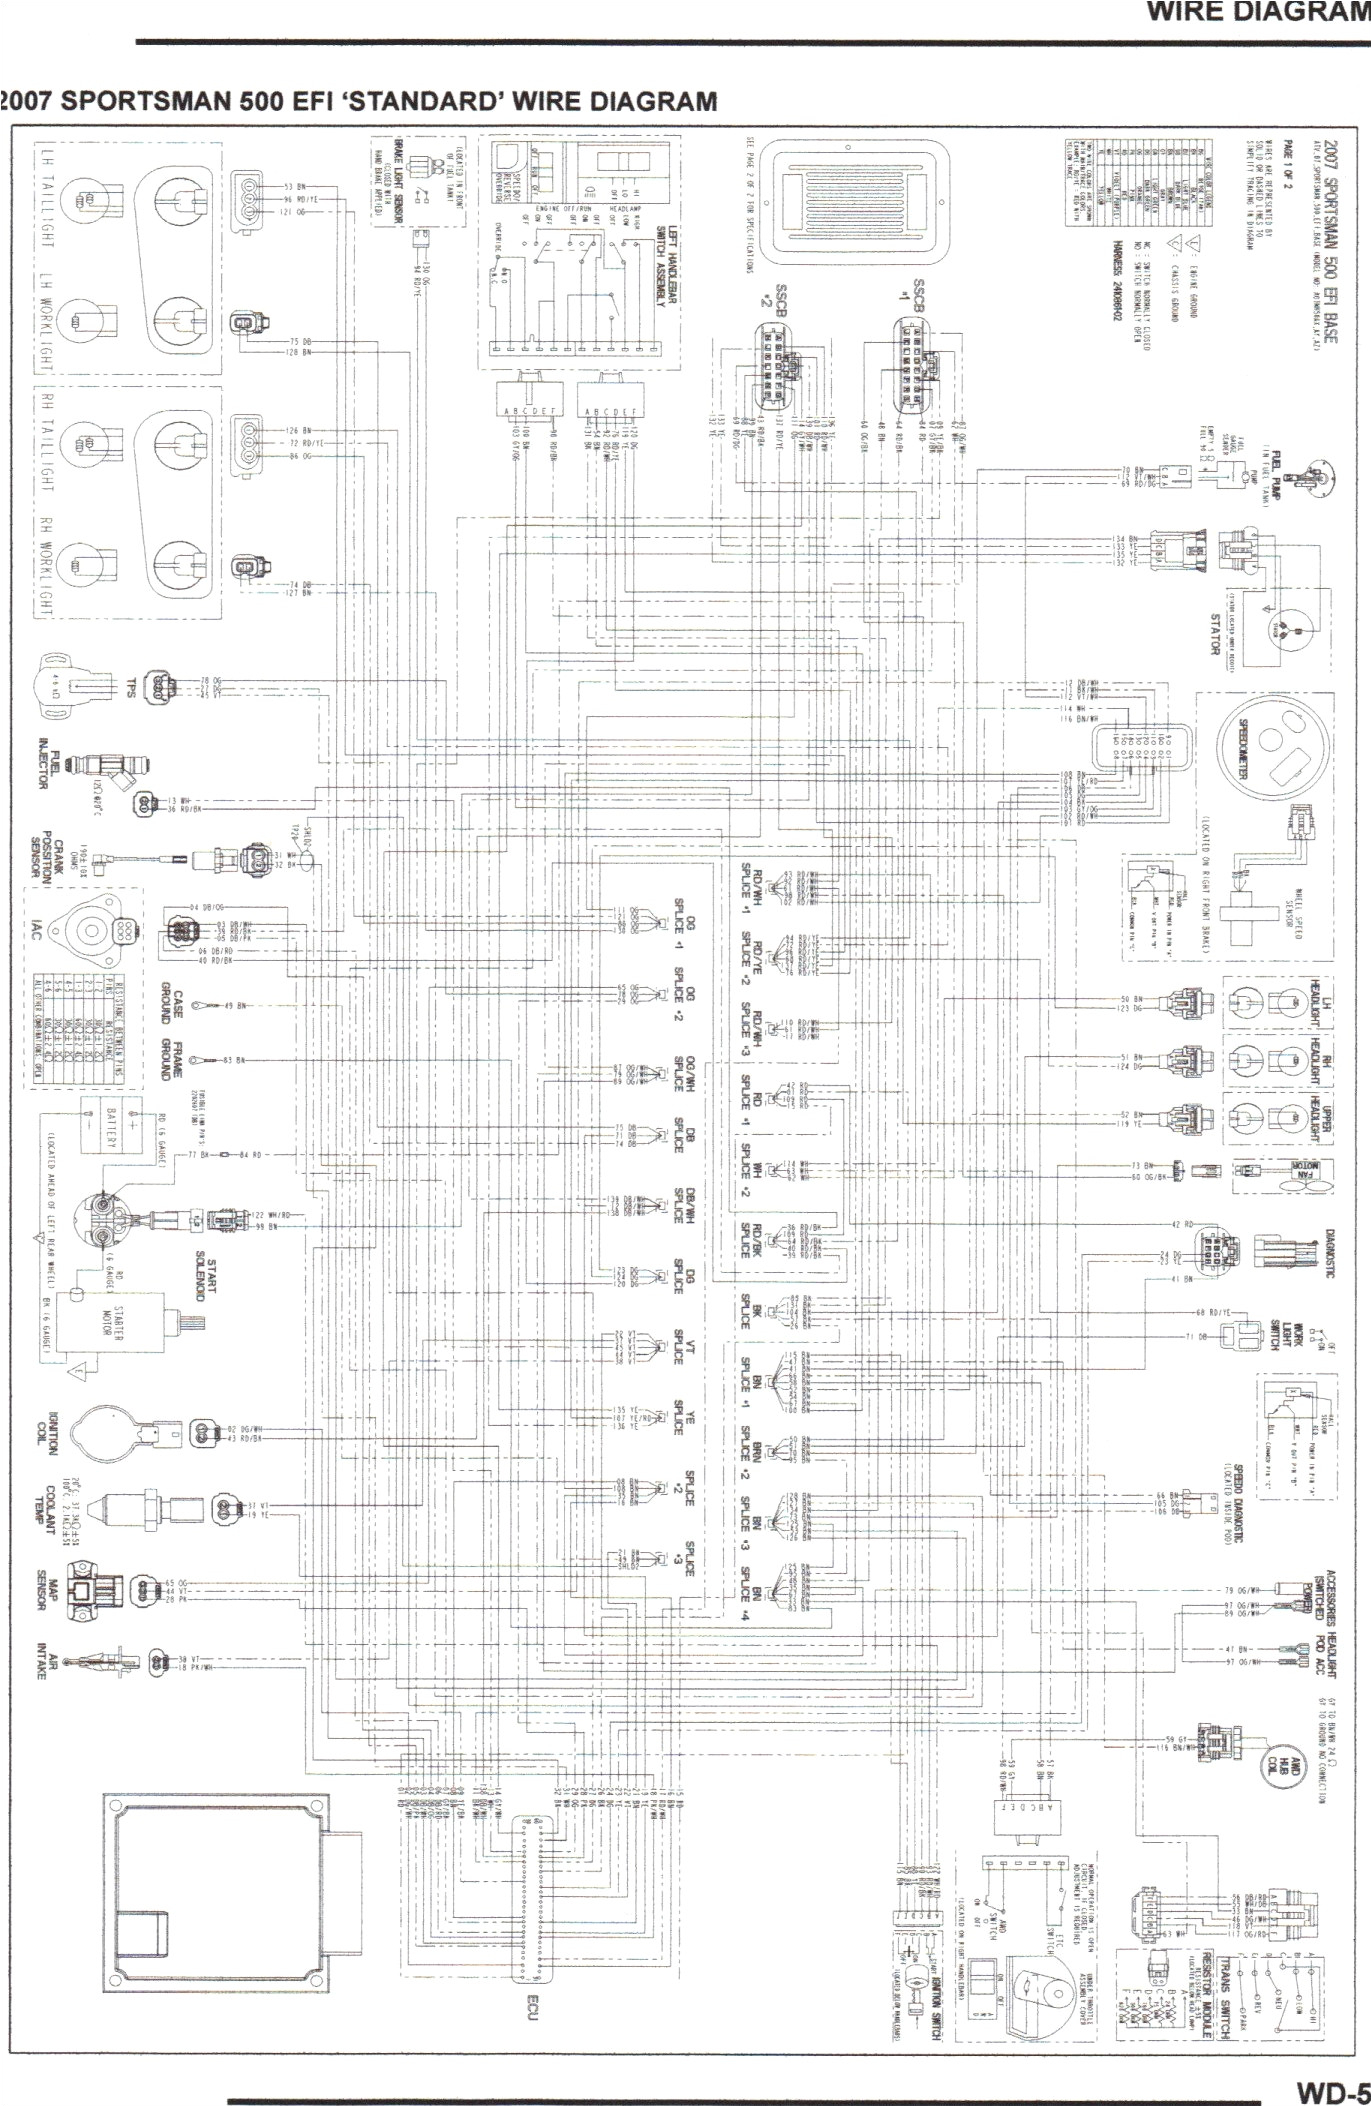 rv wiring diagram new solenoid wiring diagram elegant mon wiring diagrams best solenoid pictures of rv wiring diagram jpg